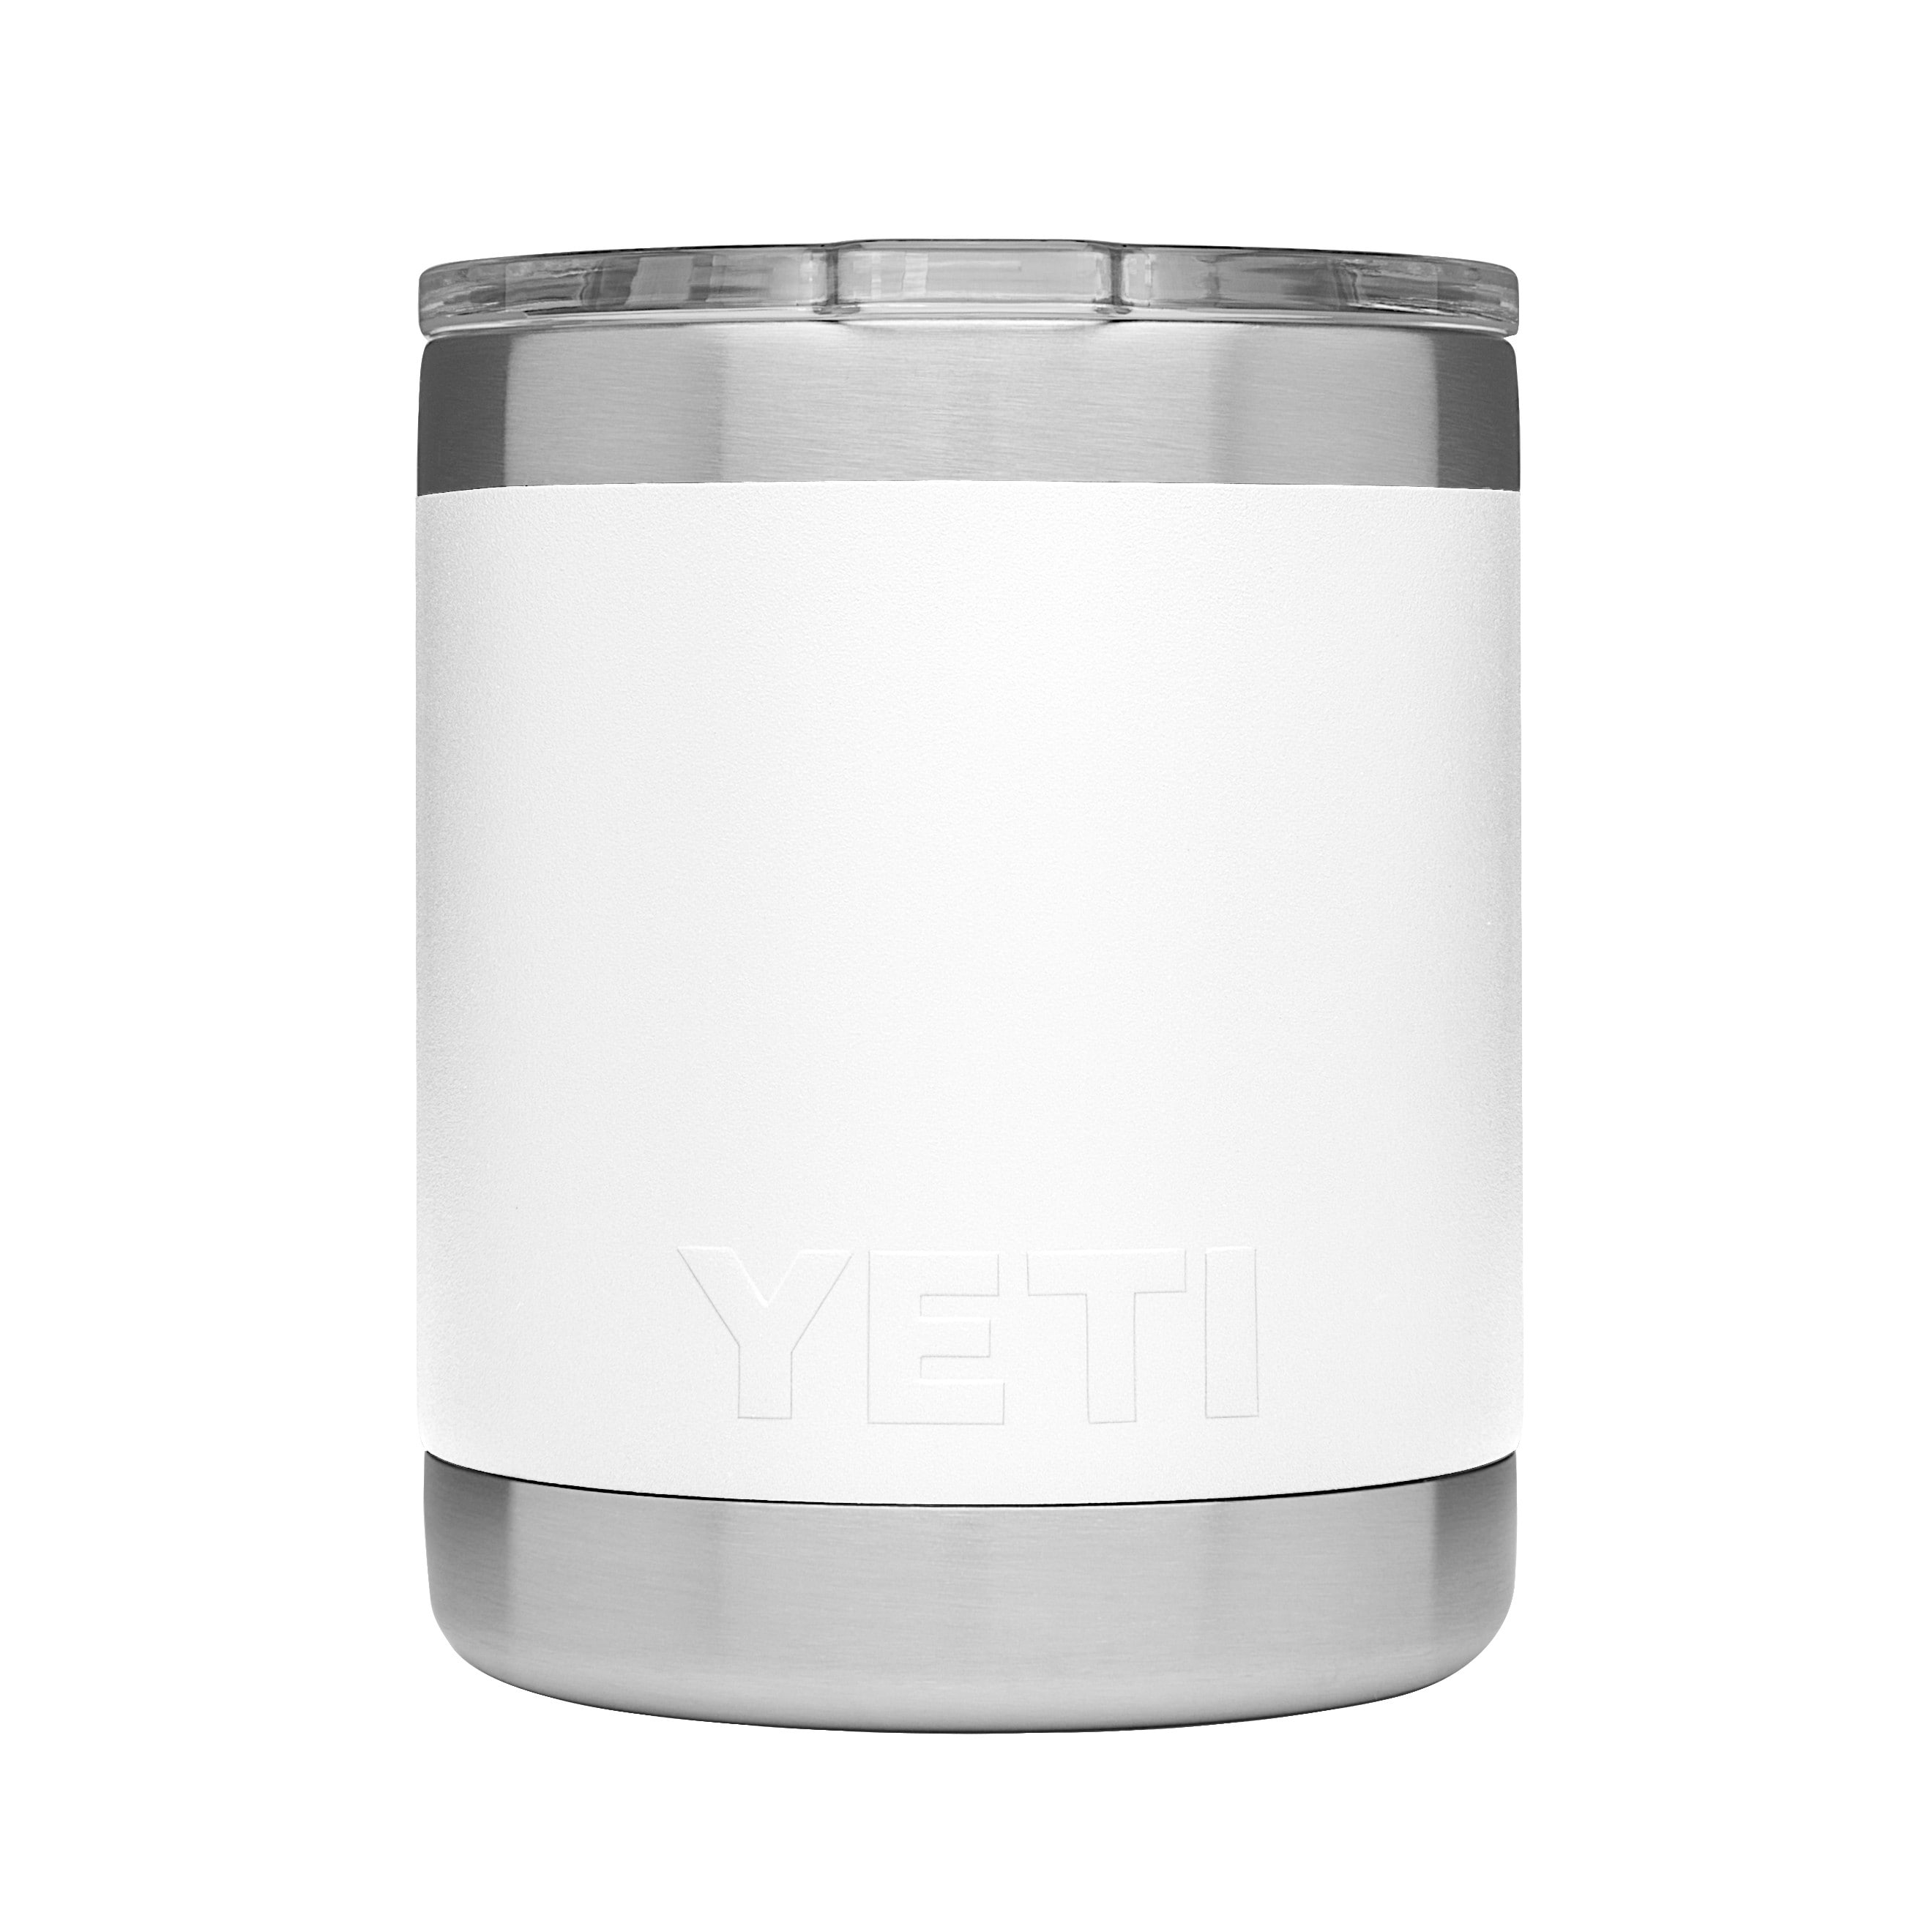 Cupholder for Yeti 24oz Coffee Mug or 10oz Lowball (Mug not